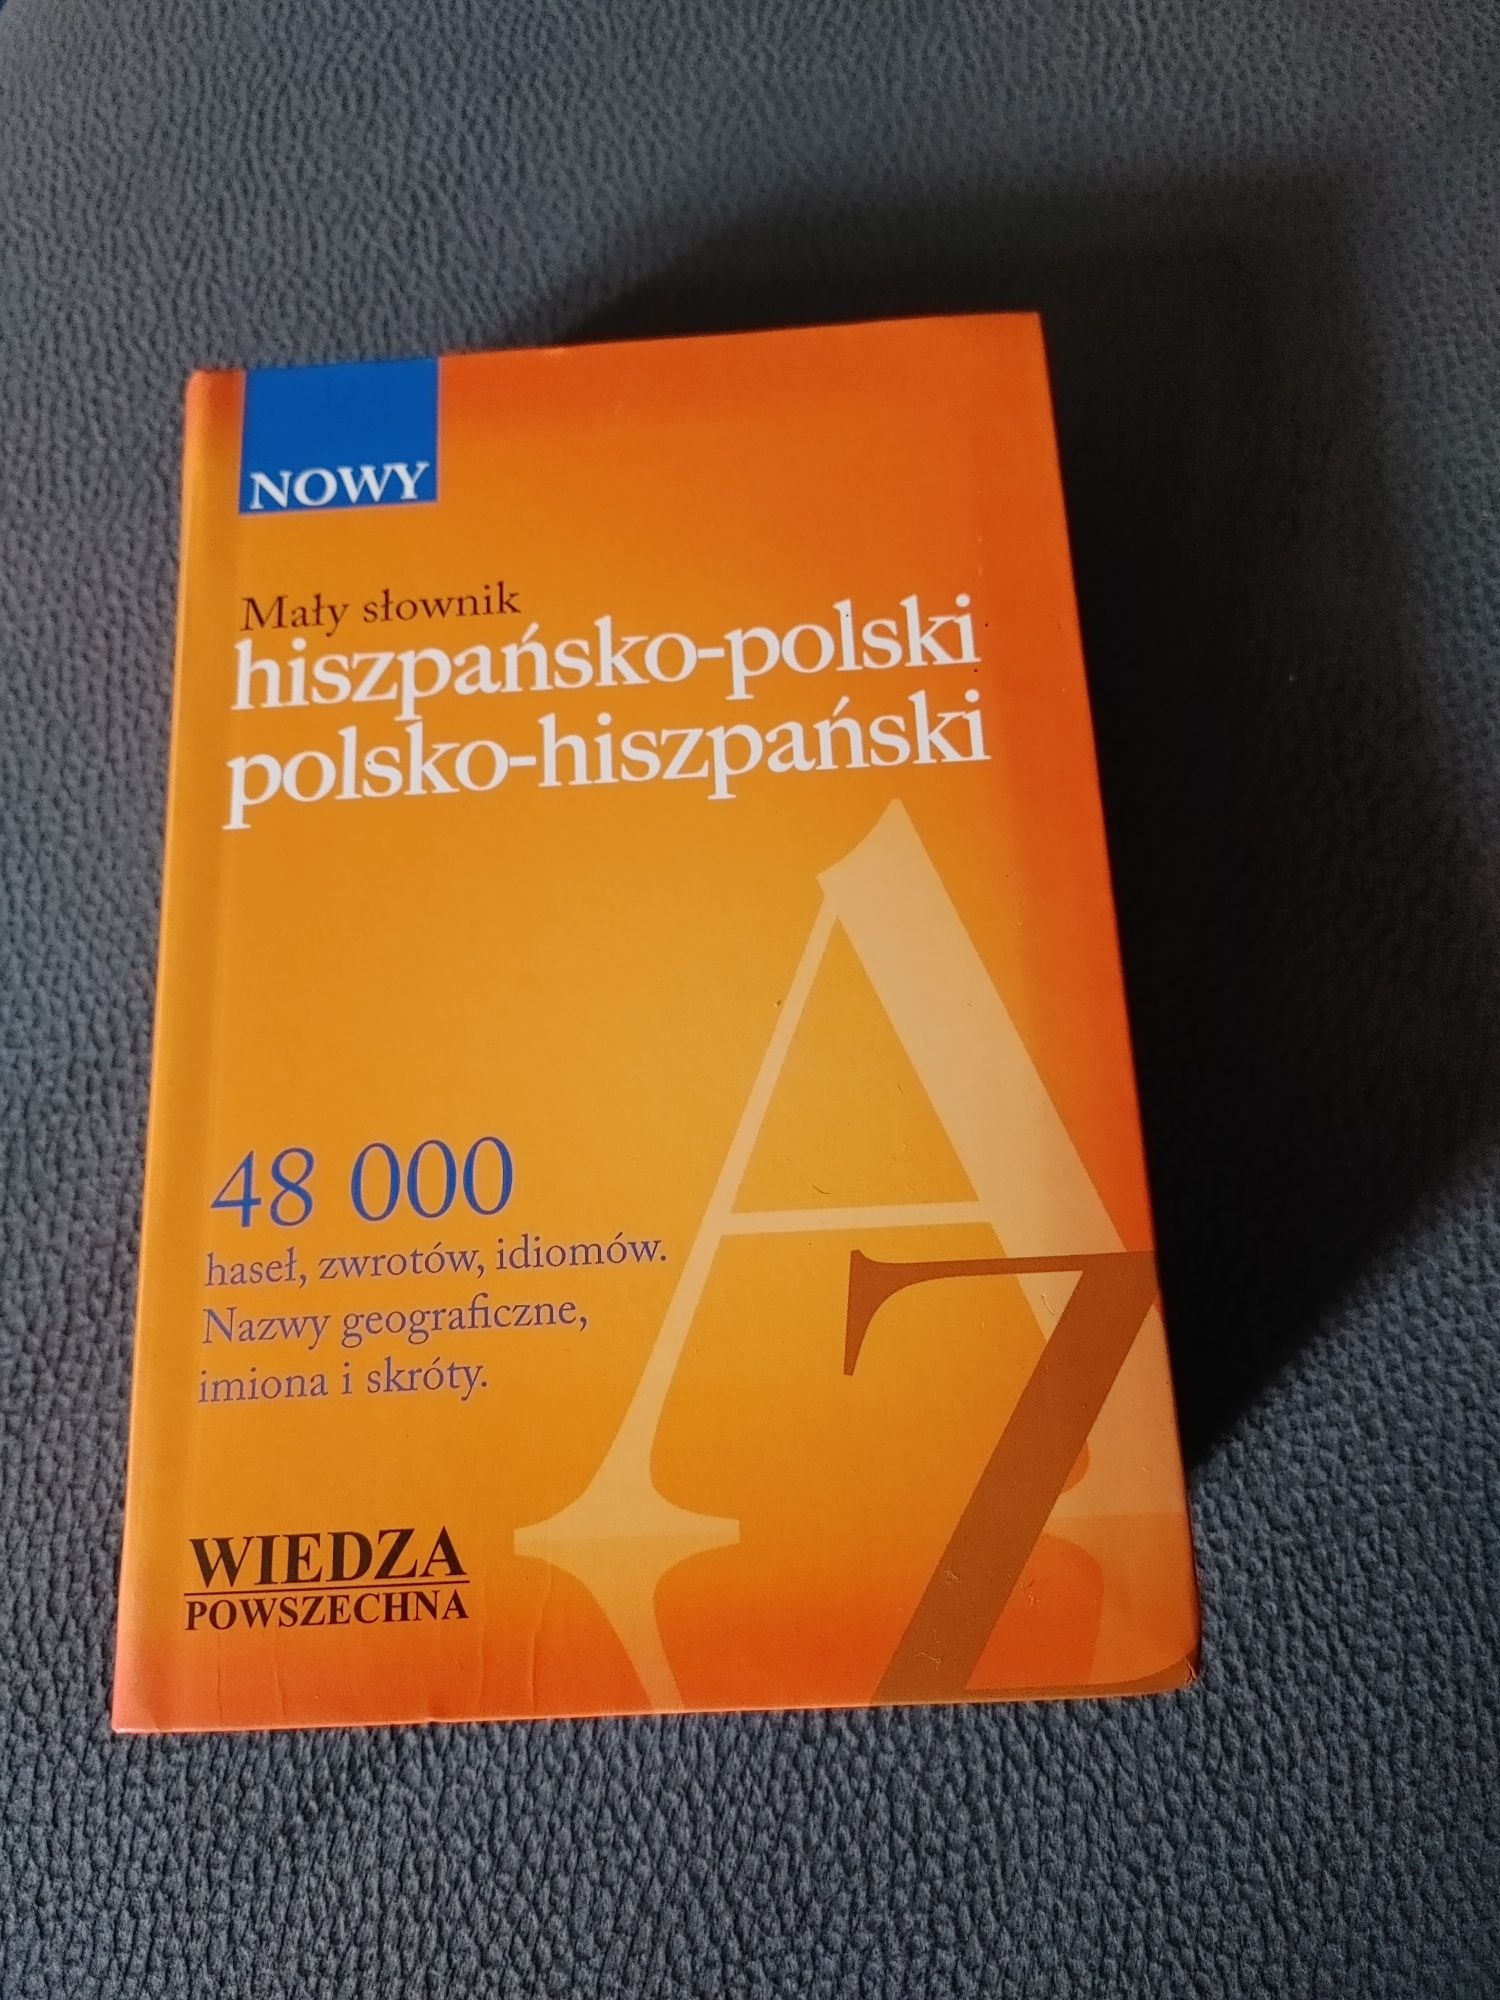 Nowy mały słownik hiszpańsko-polski i polsko-hiszpański